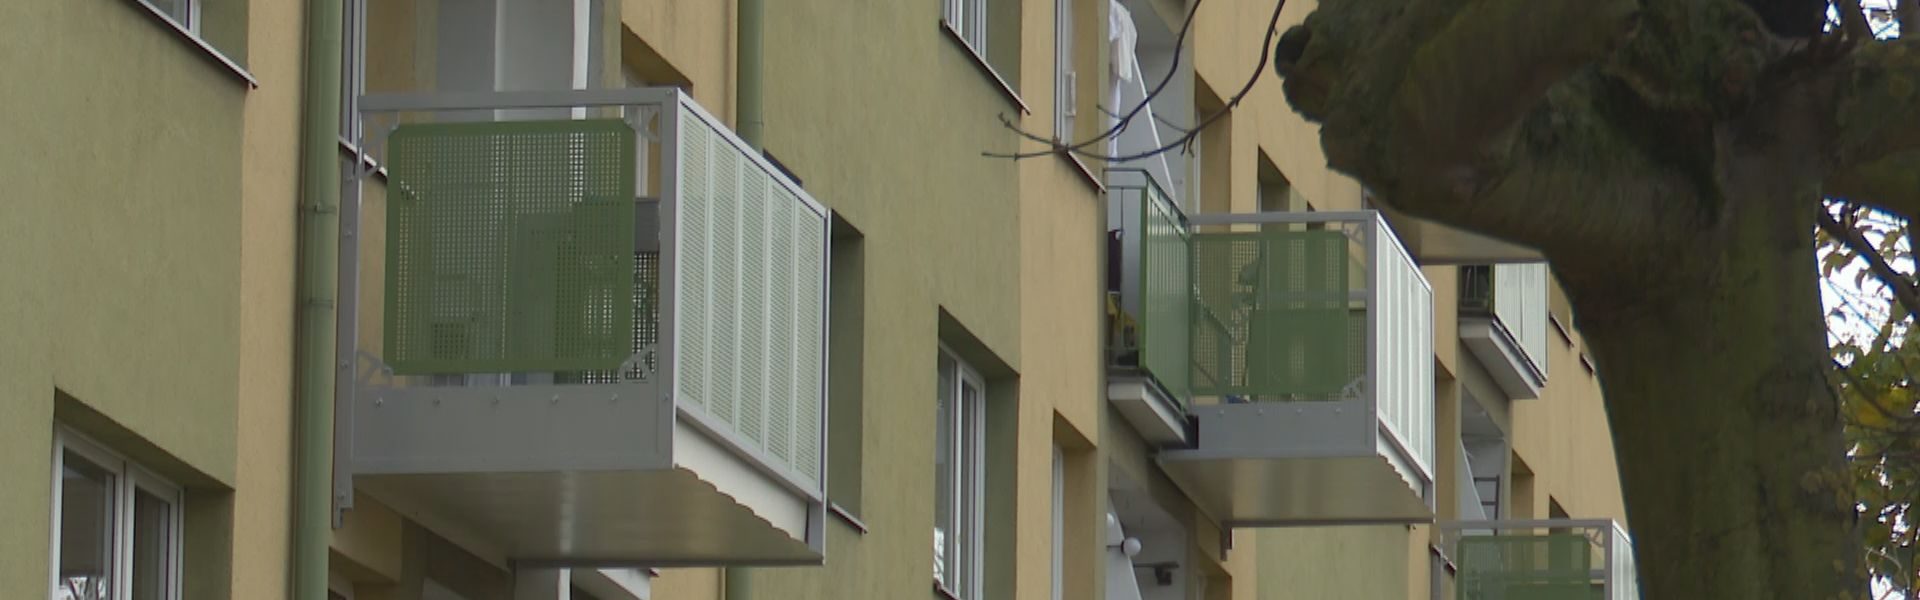 Rośnie popularność balkonów przyczepnych